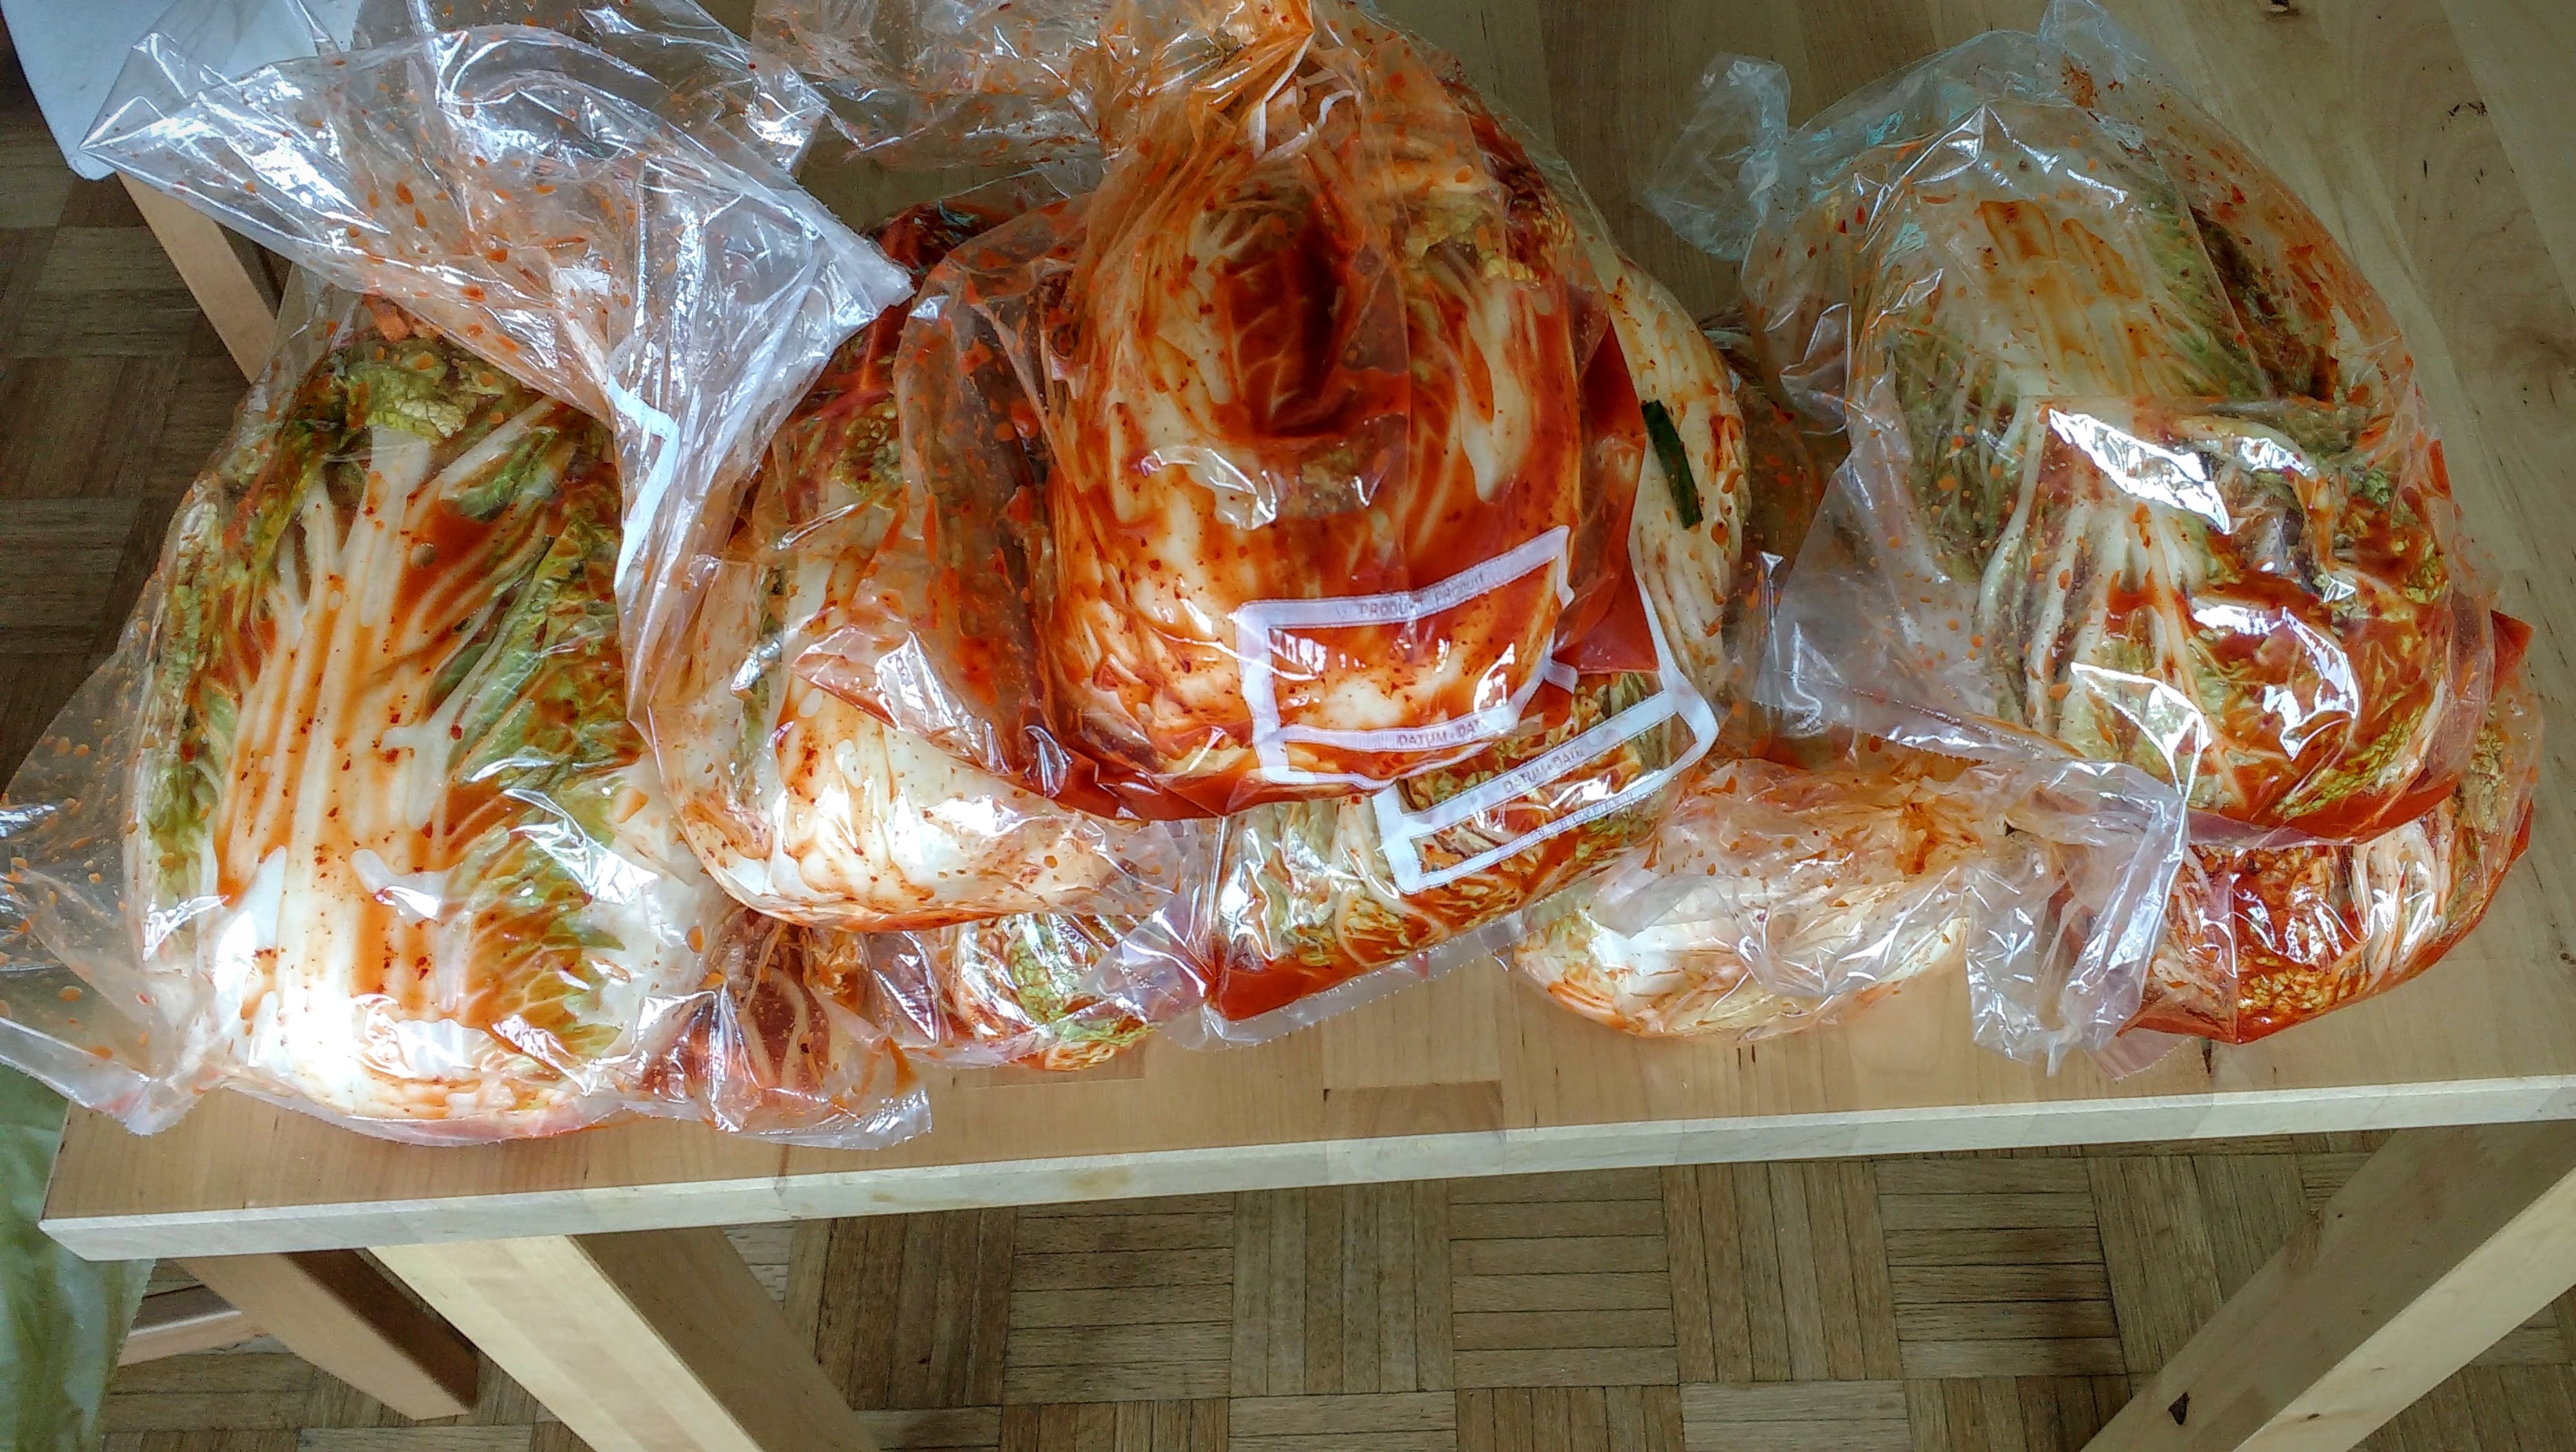 Kimchi is Ready!